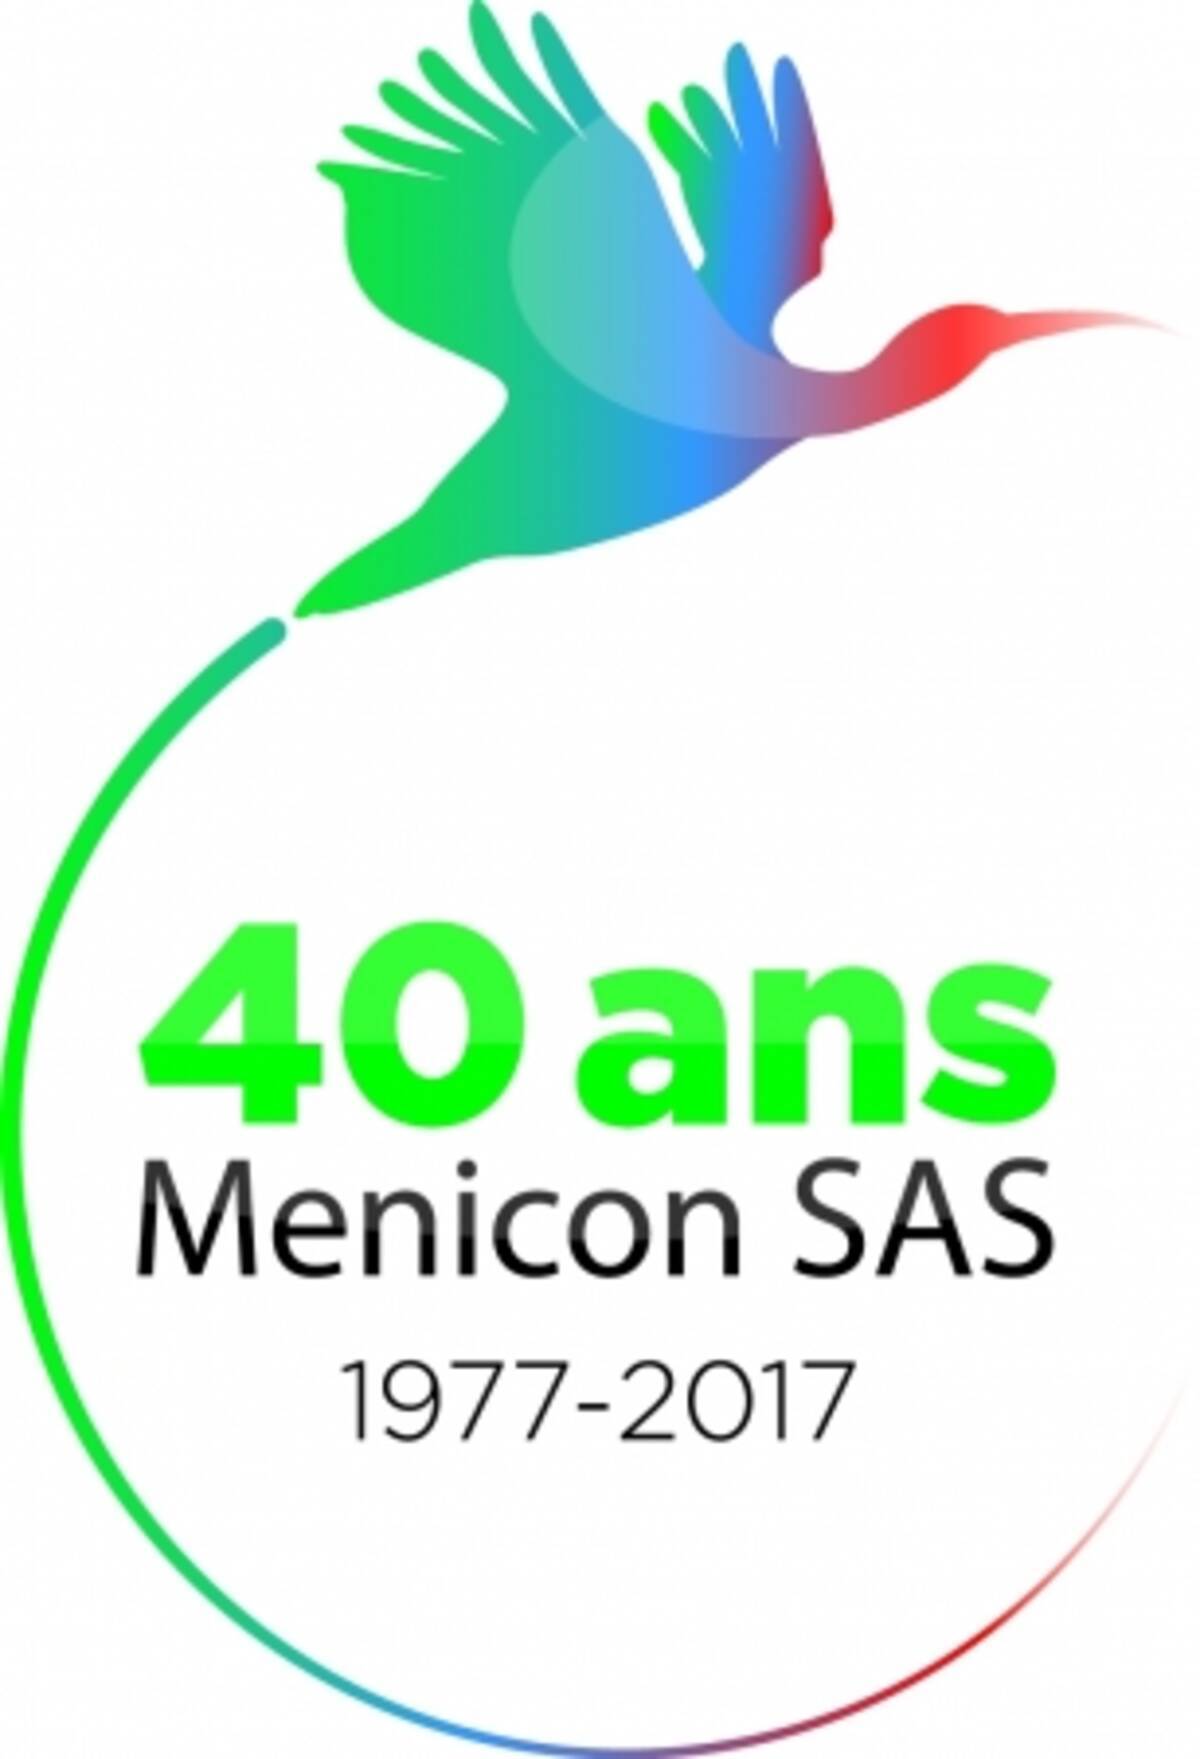 メニコンフランス現地法人 Menicon Sas 創立40周年及び新社屋完成のご案内 18年7月3日 エキサイトニュース